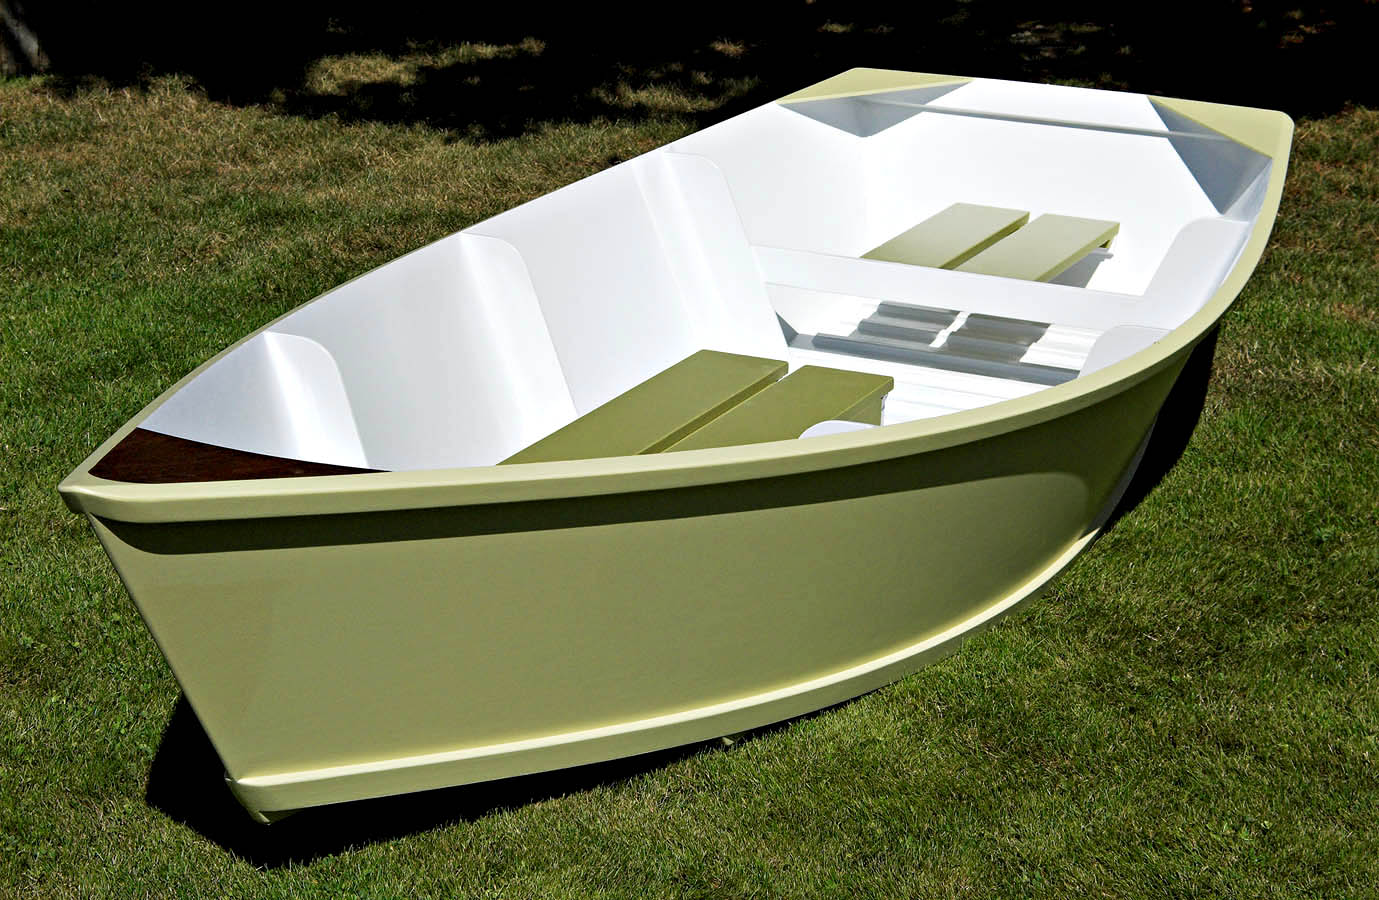 Flat Bottom Boat Plans images